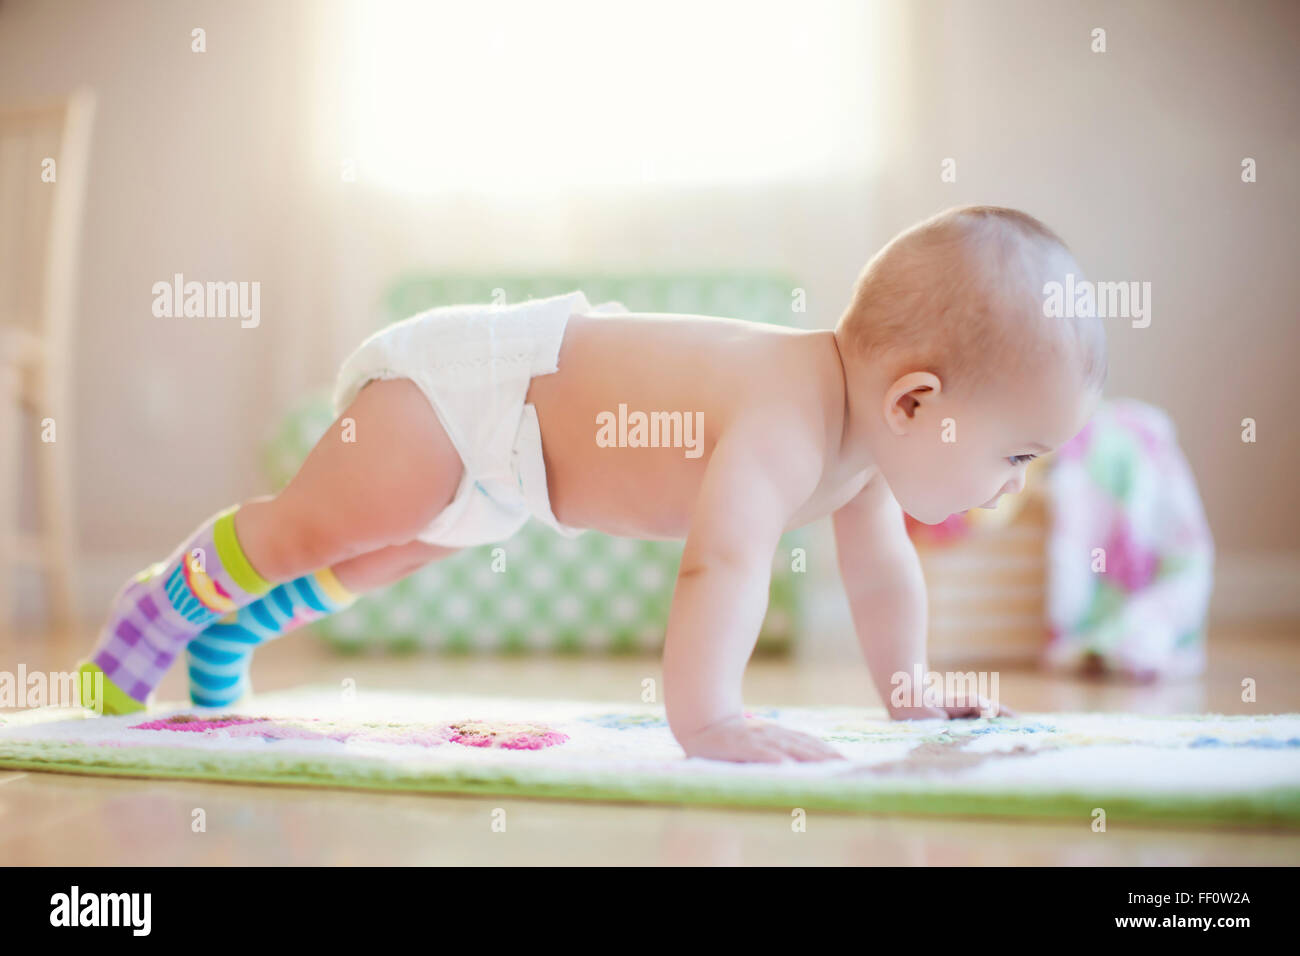 Mixed race baby girl playing on floor Stock Photo